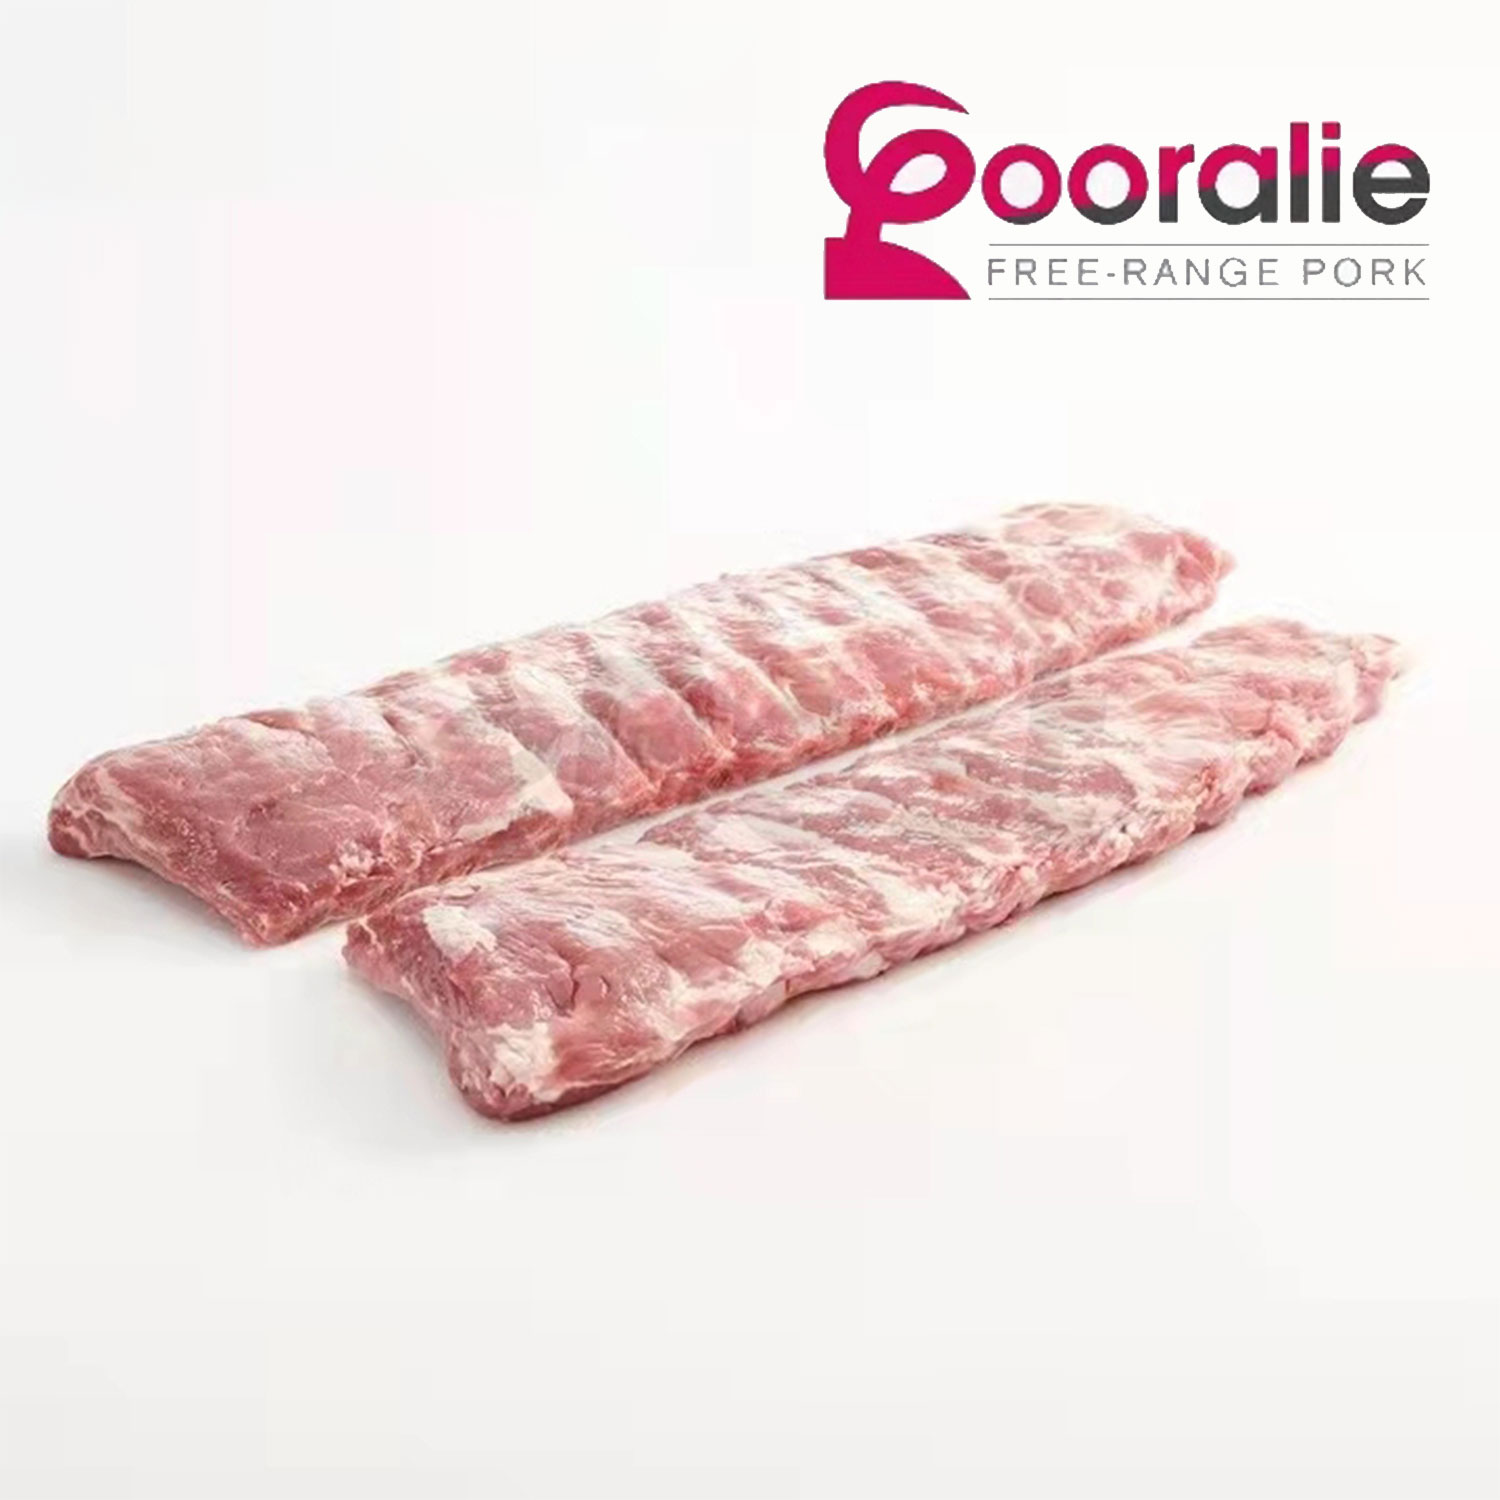 Gooralie Free Range Pork Loin Chops-eBest-Pork,Meat deli & eggs